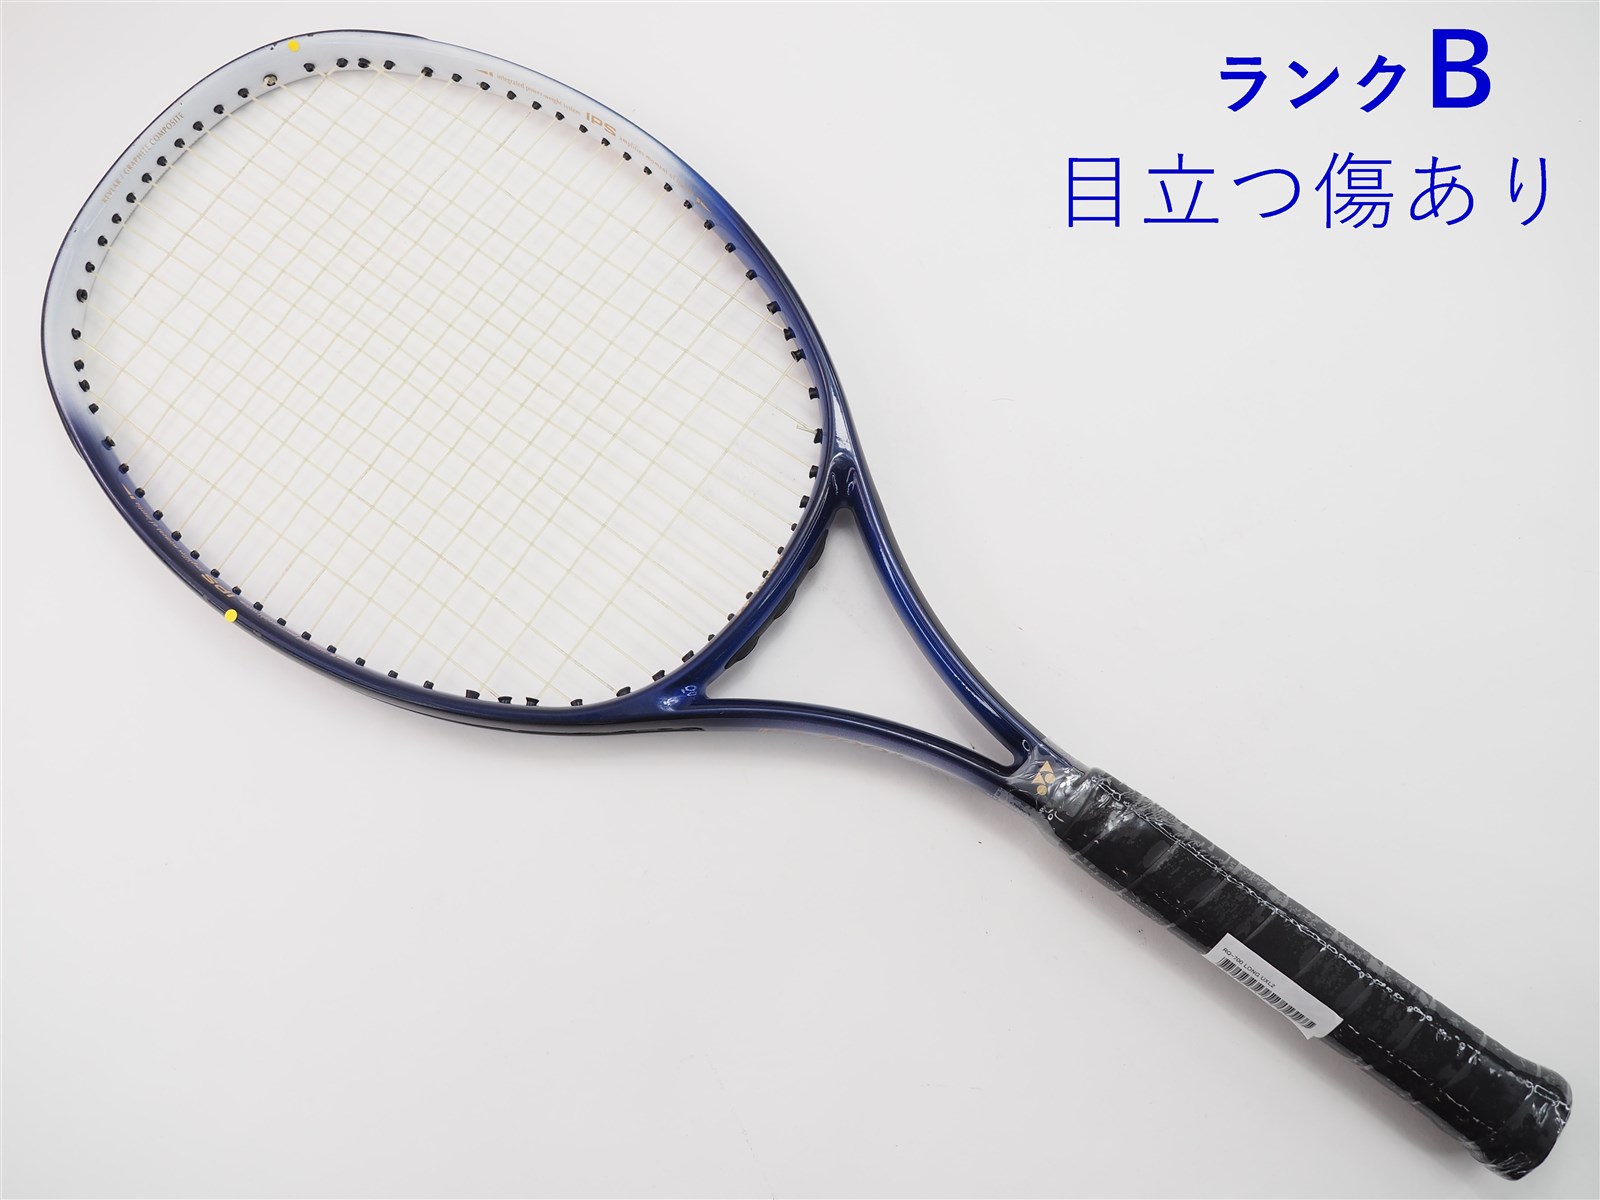 中古】ヨネックス RQ-700 ロングYONEX RQ-700 LONG(UXL2)【中古 テニス 